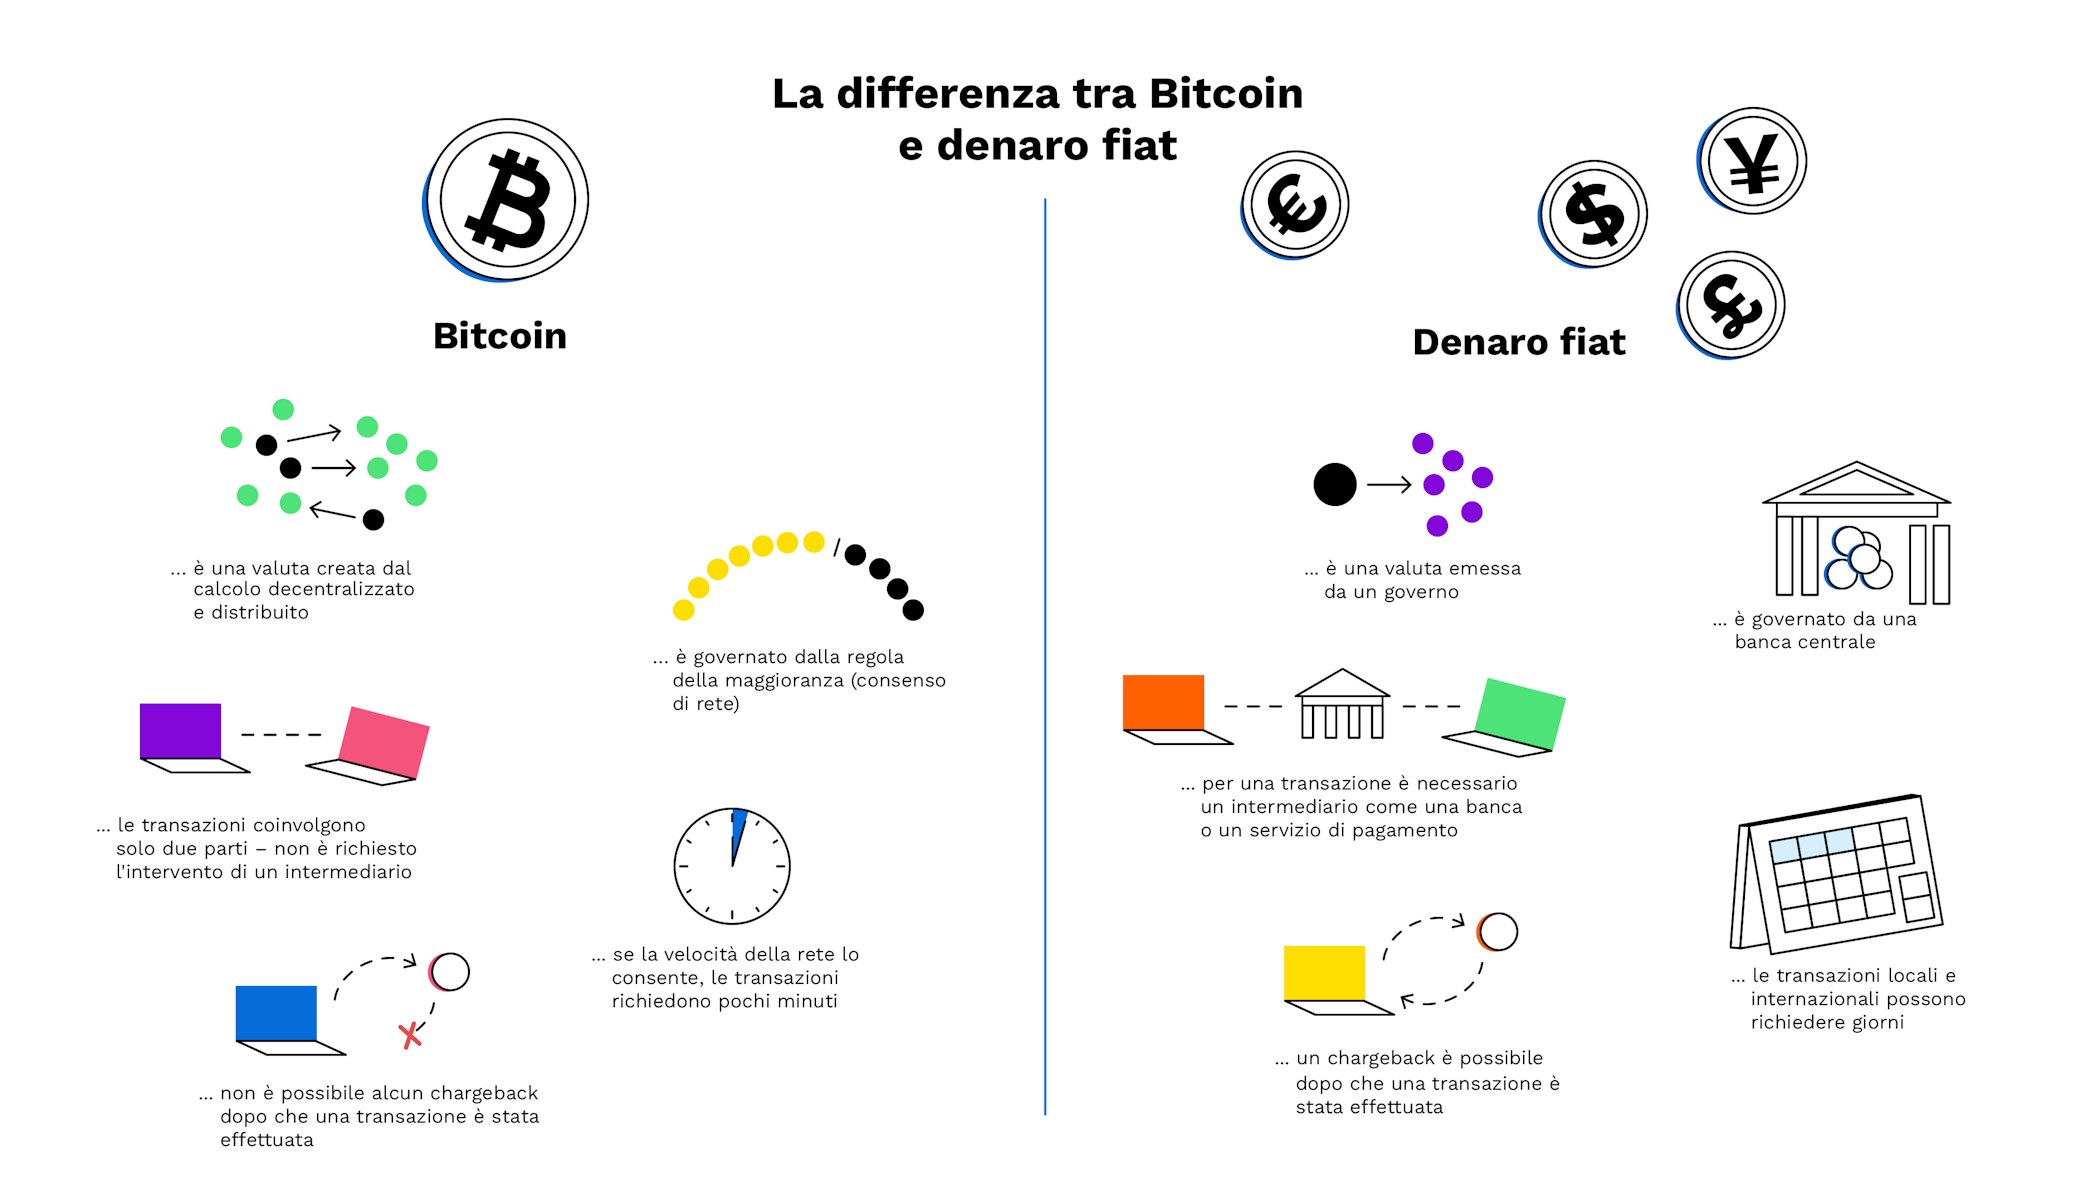 La differenza tra mercati Forex e Bitcoin